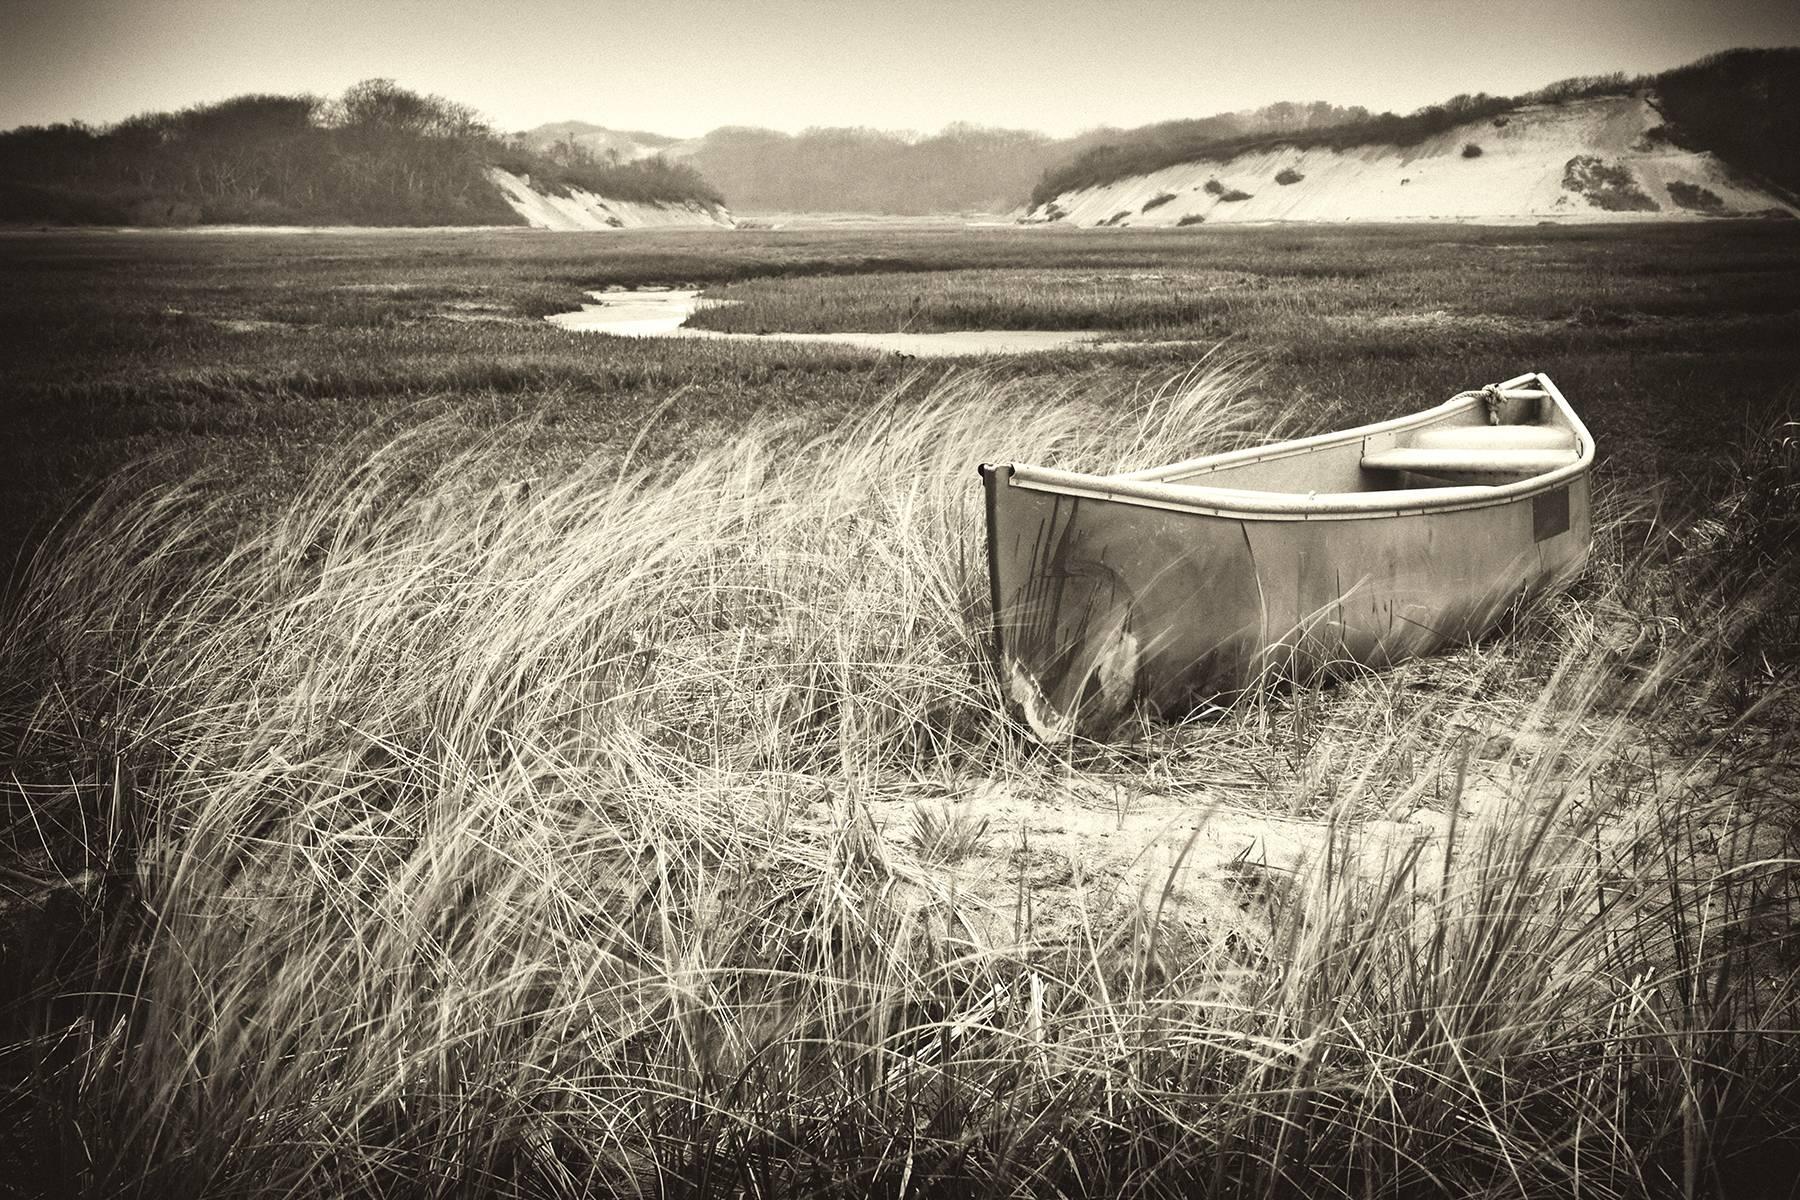 Rebecca Skinner Black and White Photograph - "Quiet Morning", photograph on paper, black and white, landscape, Cape Cod